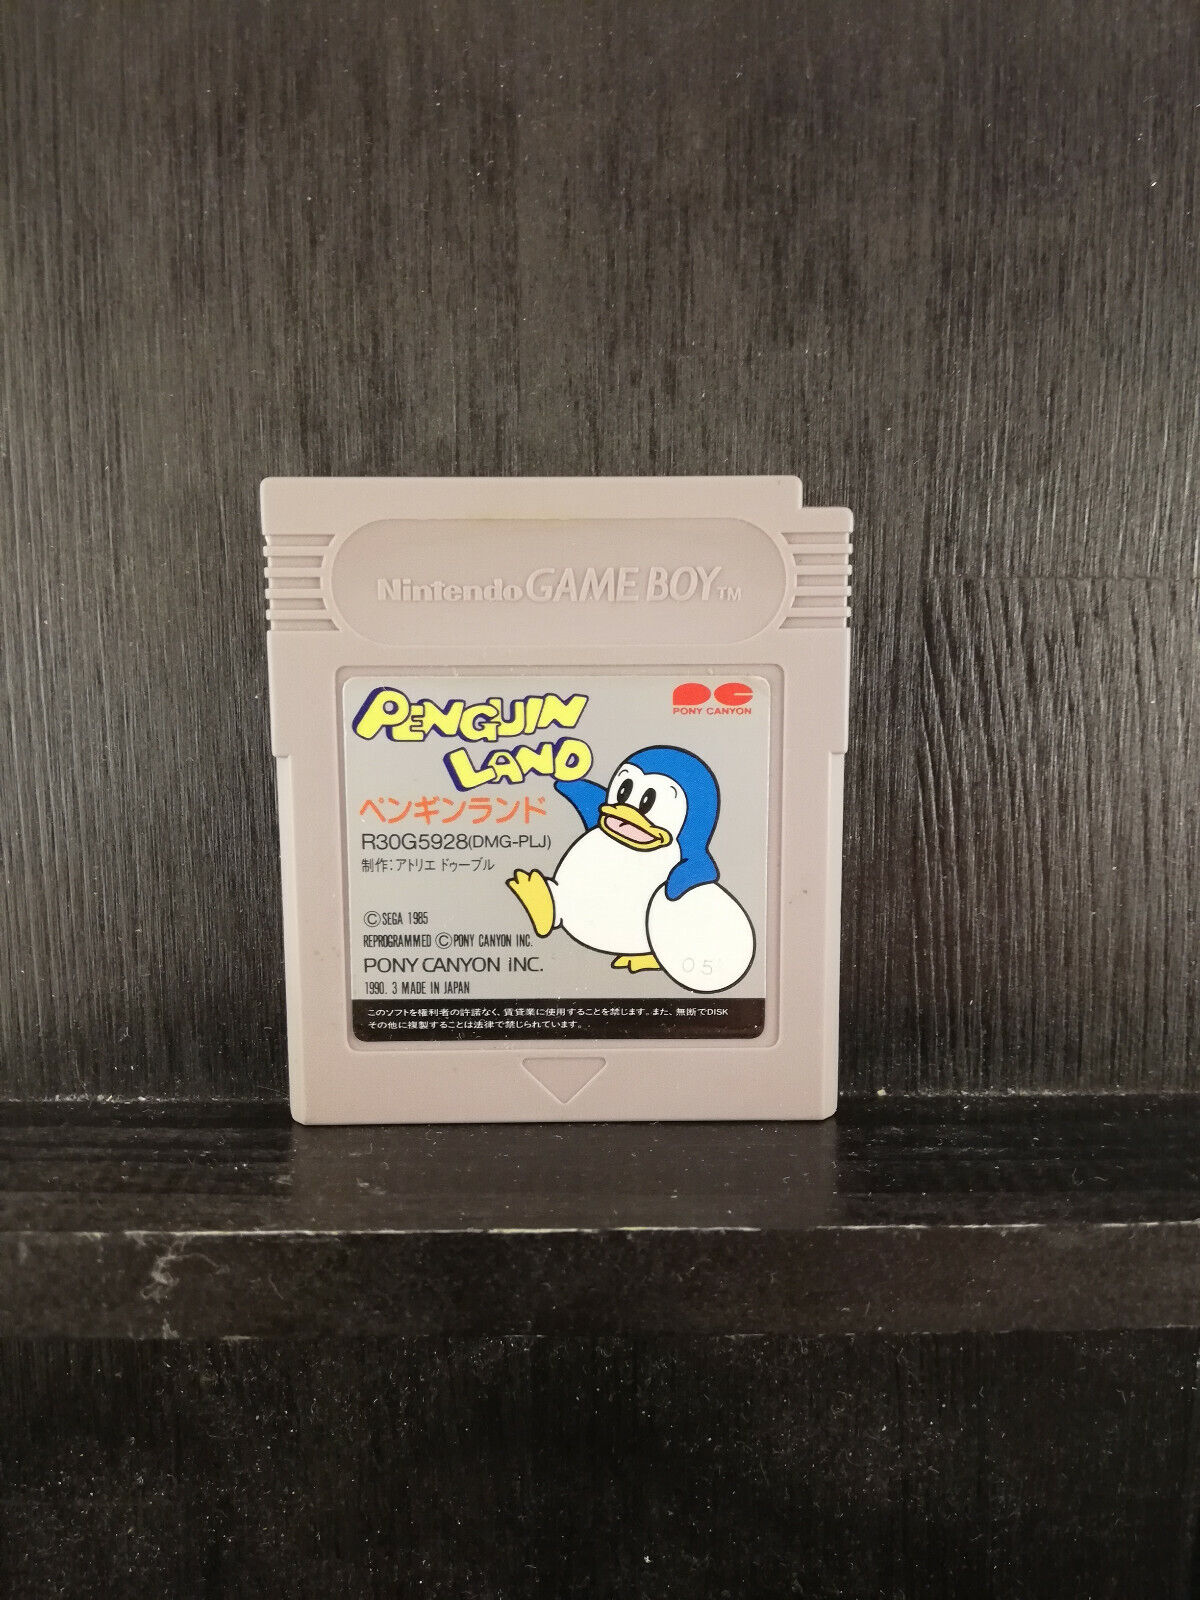 Penguin Land - Nintendo Game Boy - Pony Canyon - 1990 - Japan Import